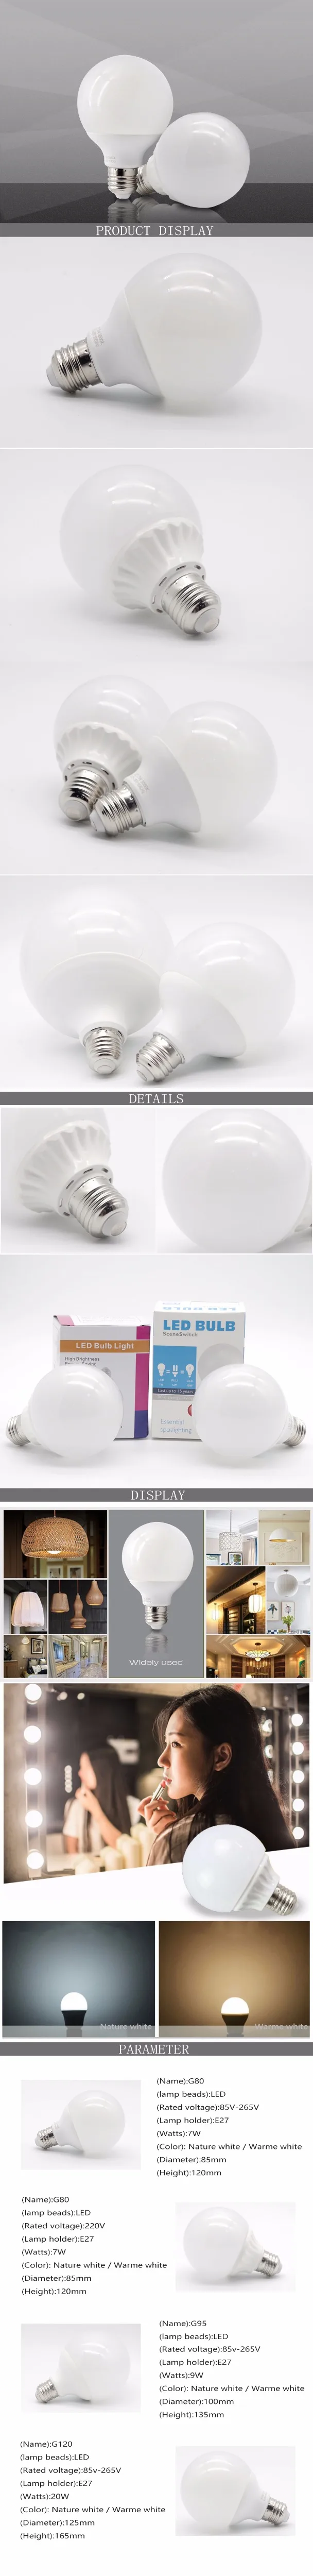 Светодиодный светильник Dragon Ball E27 AC85-265V, супер яркая лампа в форме шарика, 7 Вт, 9 Вт, 18 Вт, мощный светодиодный светильник для гостиной, спальни, светильник, ing